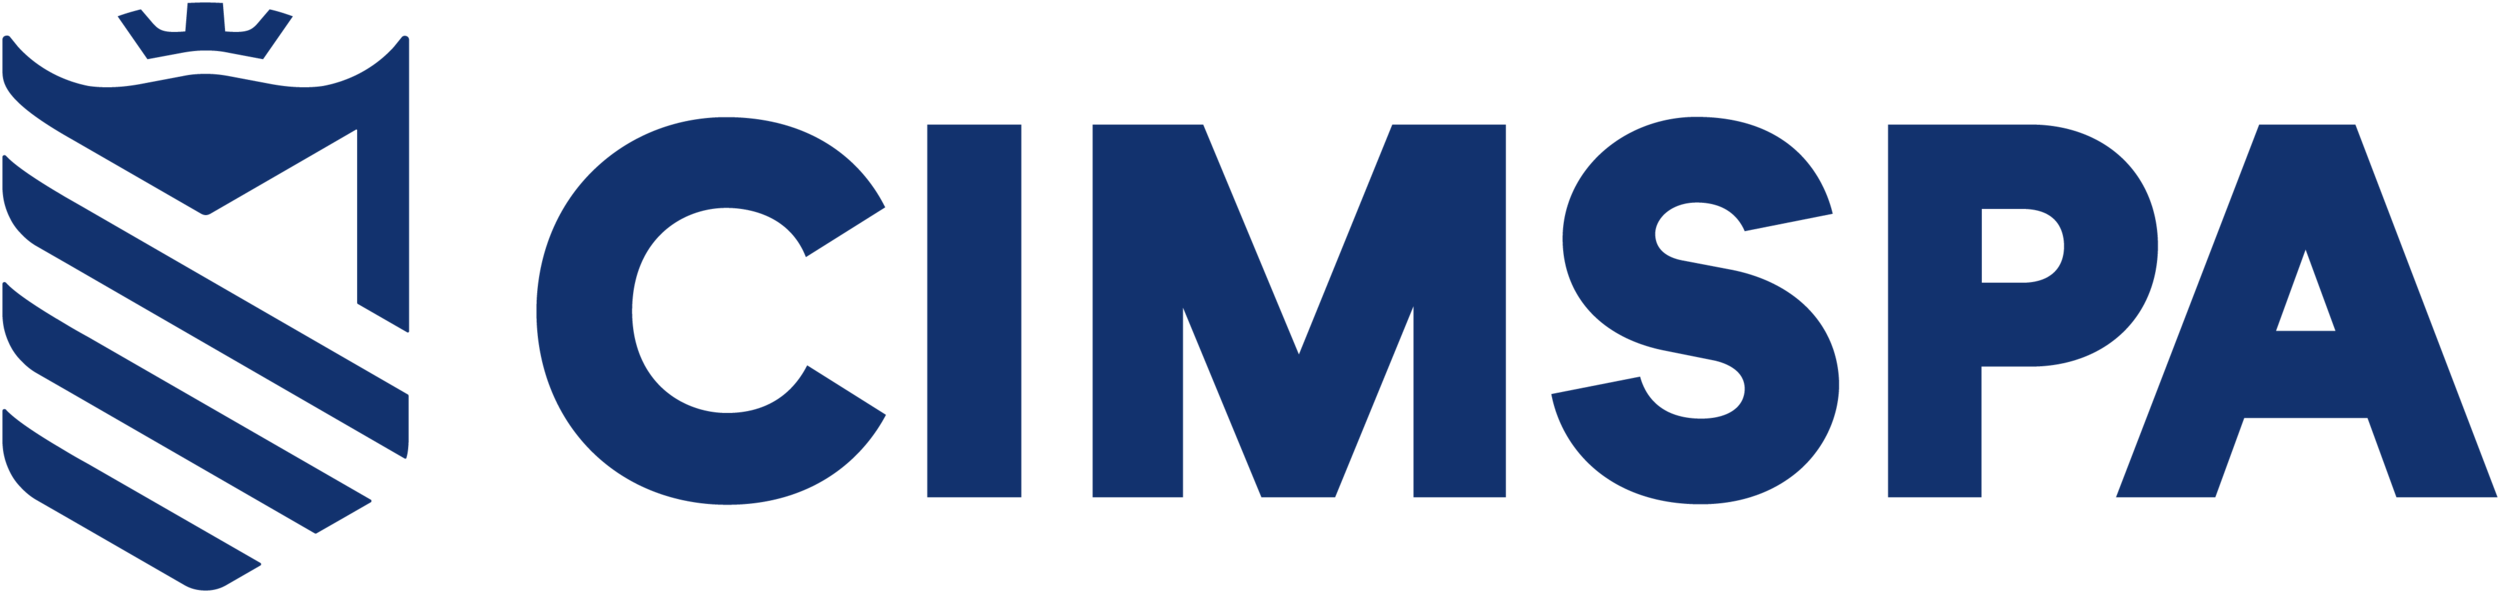 CIMSPA-Logo.png